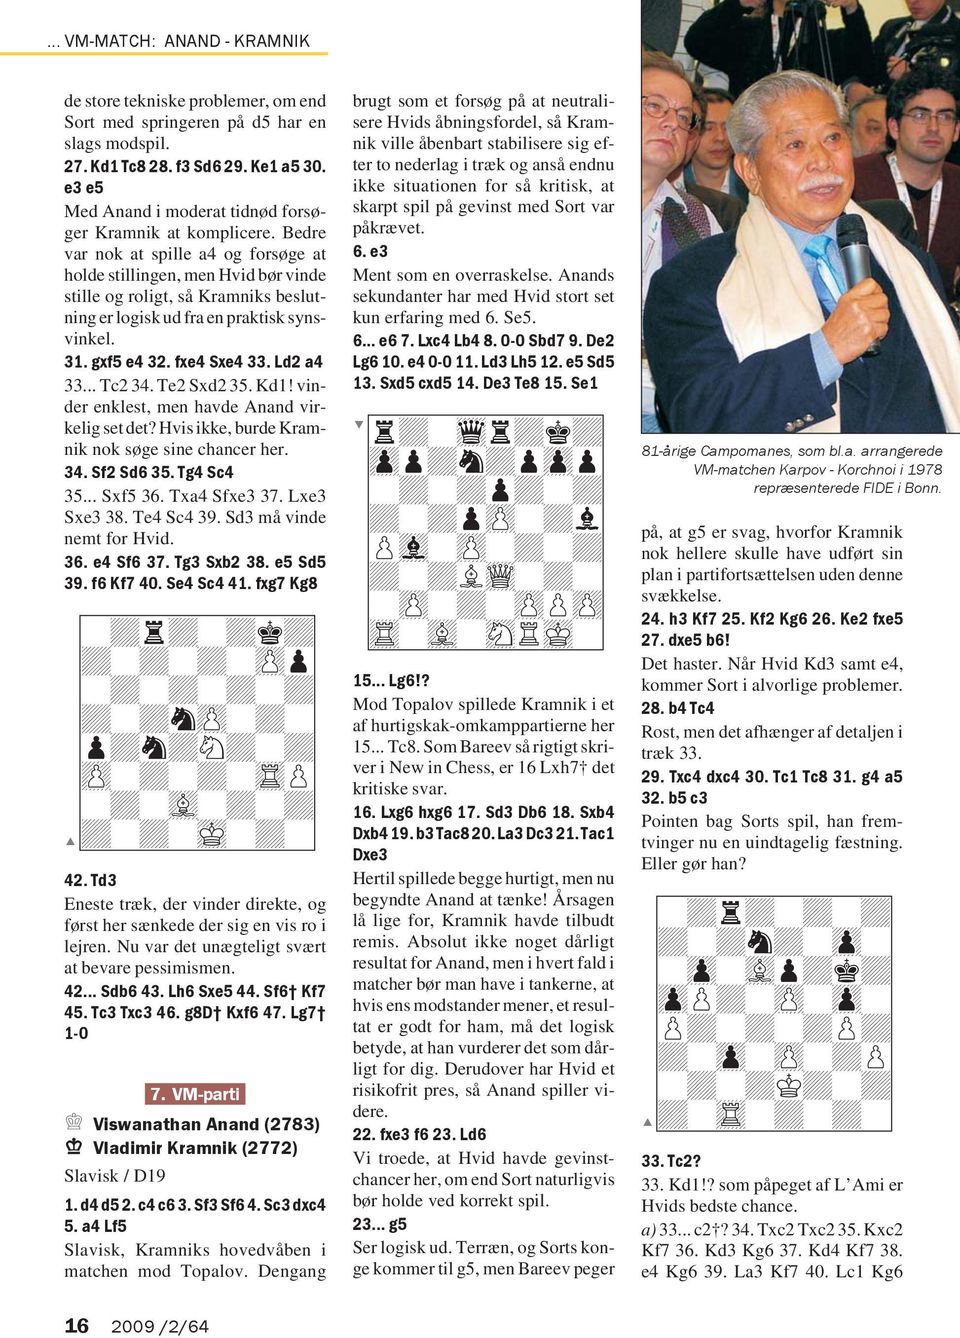 Bedre var nok at spille a4 og forsøge at holde stillingen, men Hvid bør vinde stille og roligt, så Kramniks beslutning er logisk ud fra en praktisk synsvinkel. 31. gxf5 e4 32. fxe4 Sxe4 33. Ld2 a4 33.